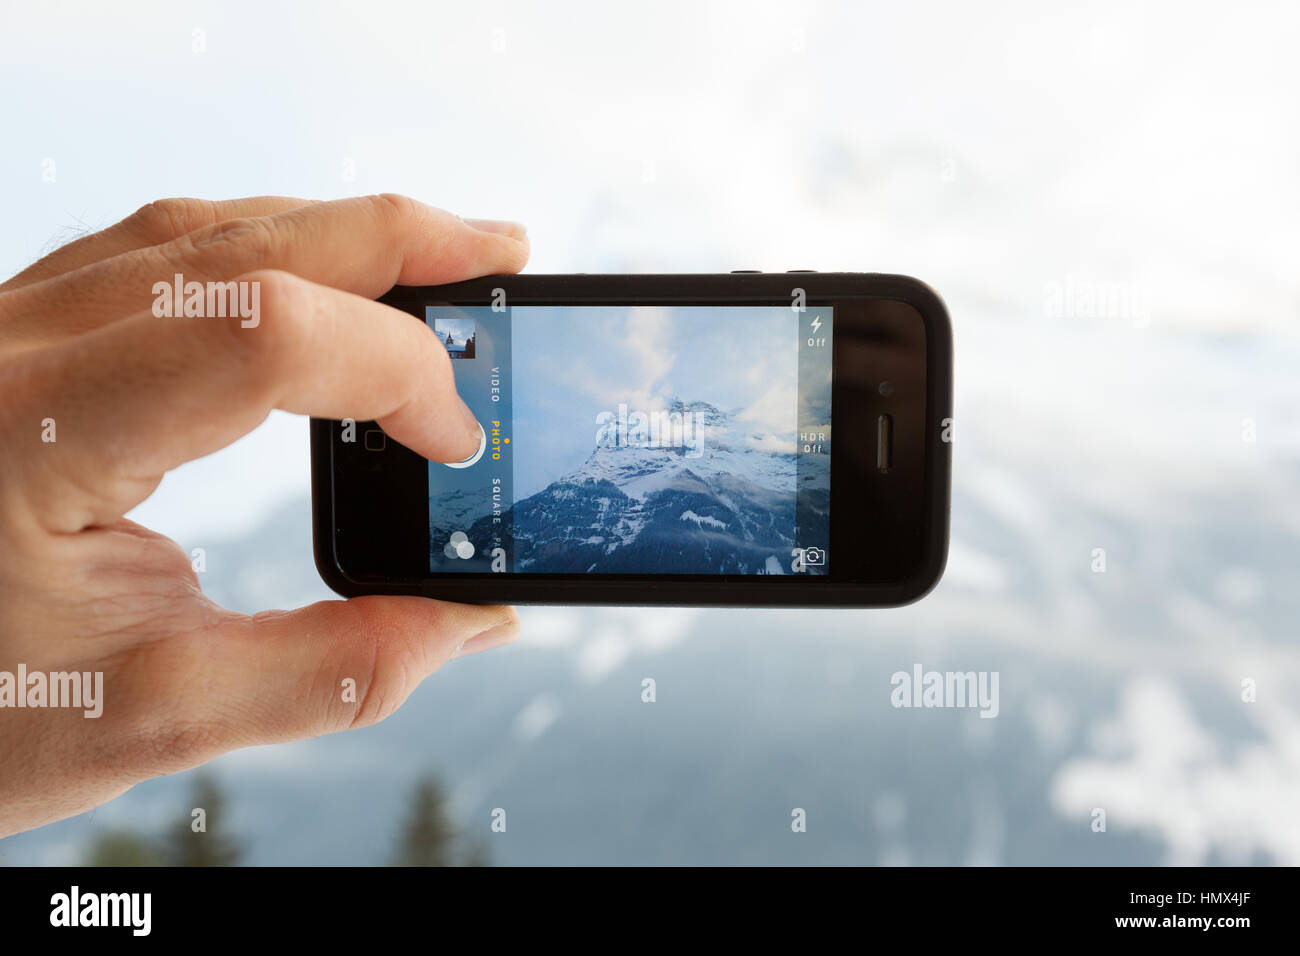 GRINDELWALD, Suiza - febrero 4, 2014: el hombre toma una foto de la montaña Eiger utilizando la aplicación Cámara en un Apple iPhone 4s. Primer plano de la Foto de stock